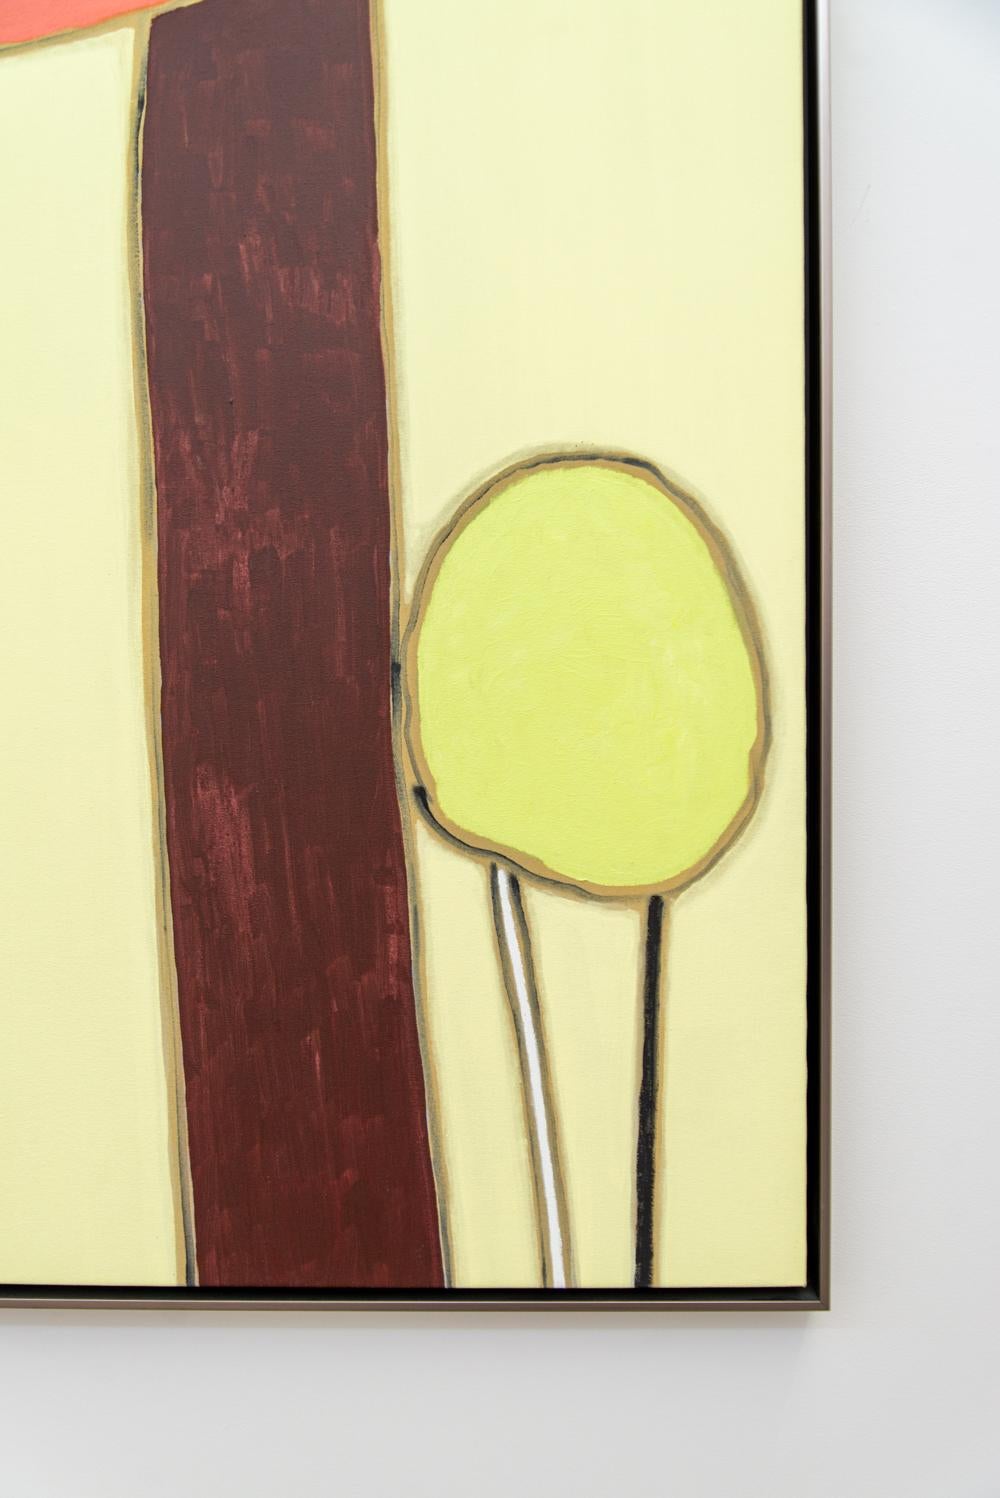 Threesome - haut, coloré, minimaliste, abstrait, acrylique sur toile - Abstrait Painting par Pat Service